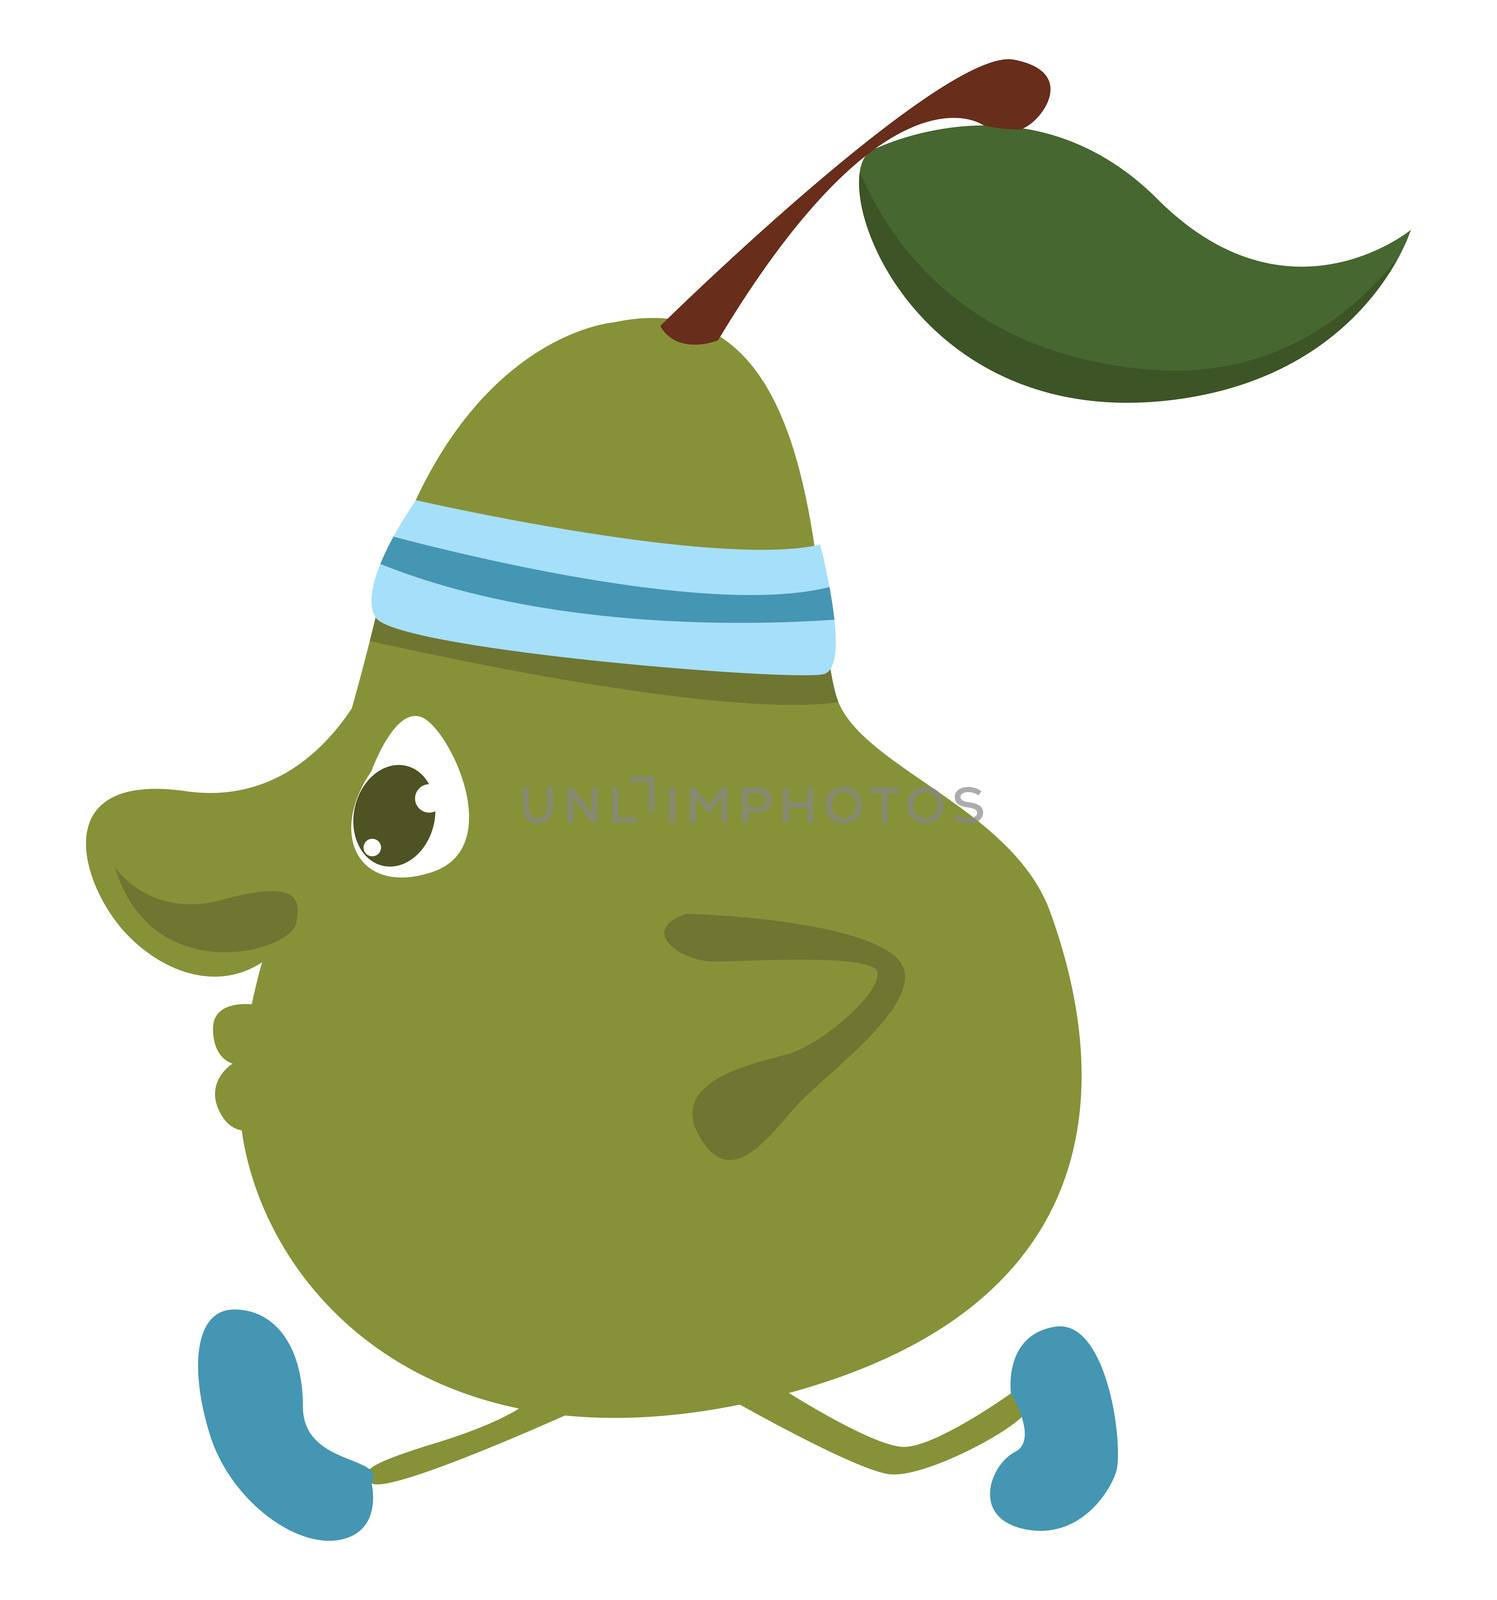 Running pear , illustration, vector on white background by Morphart